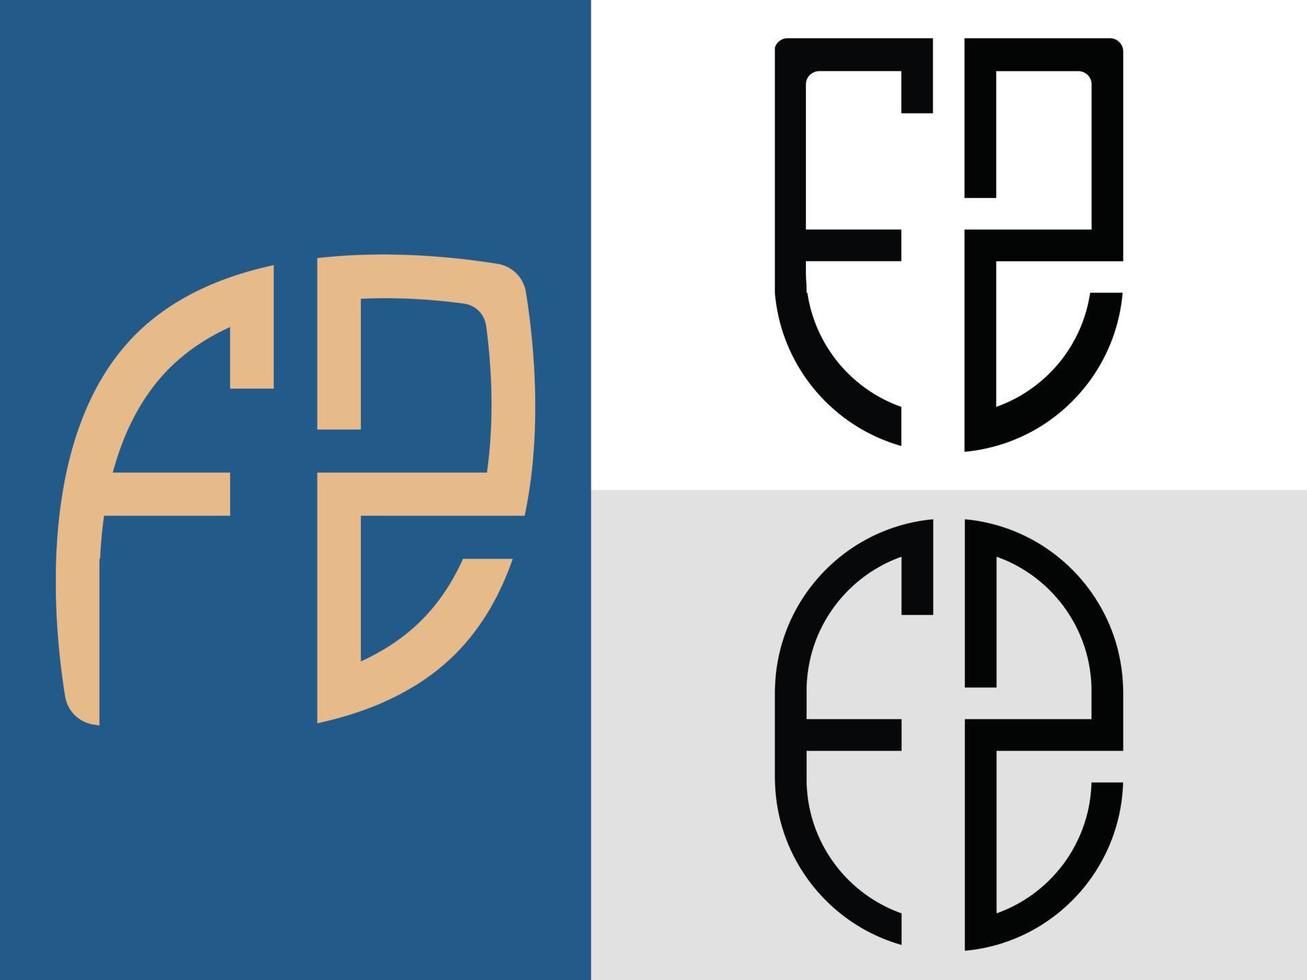 creatief eerste brieven fz logo ontwerpen bundel vector